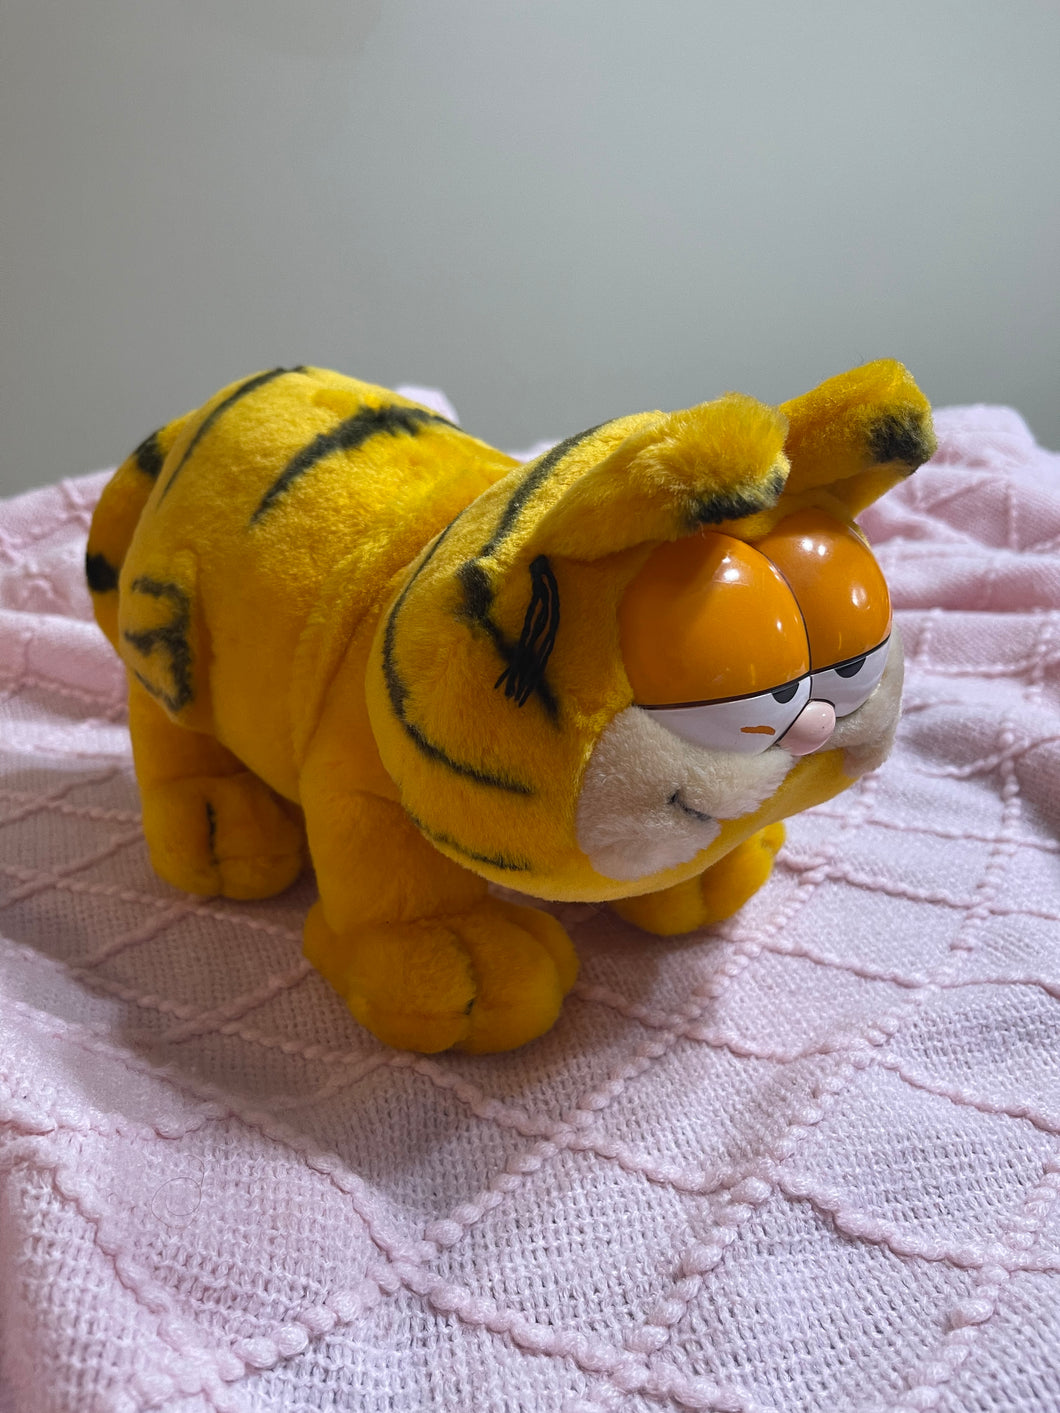 1978 standing Garfield plush toy - 14”